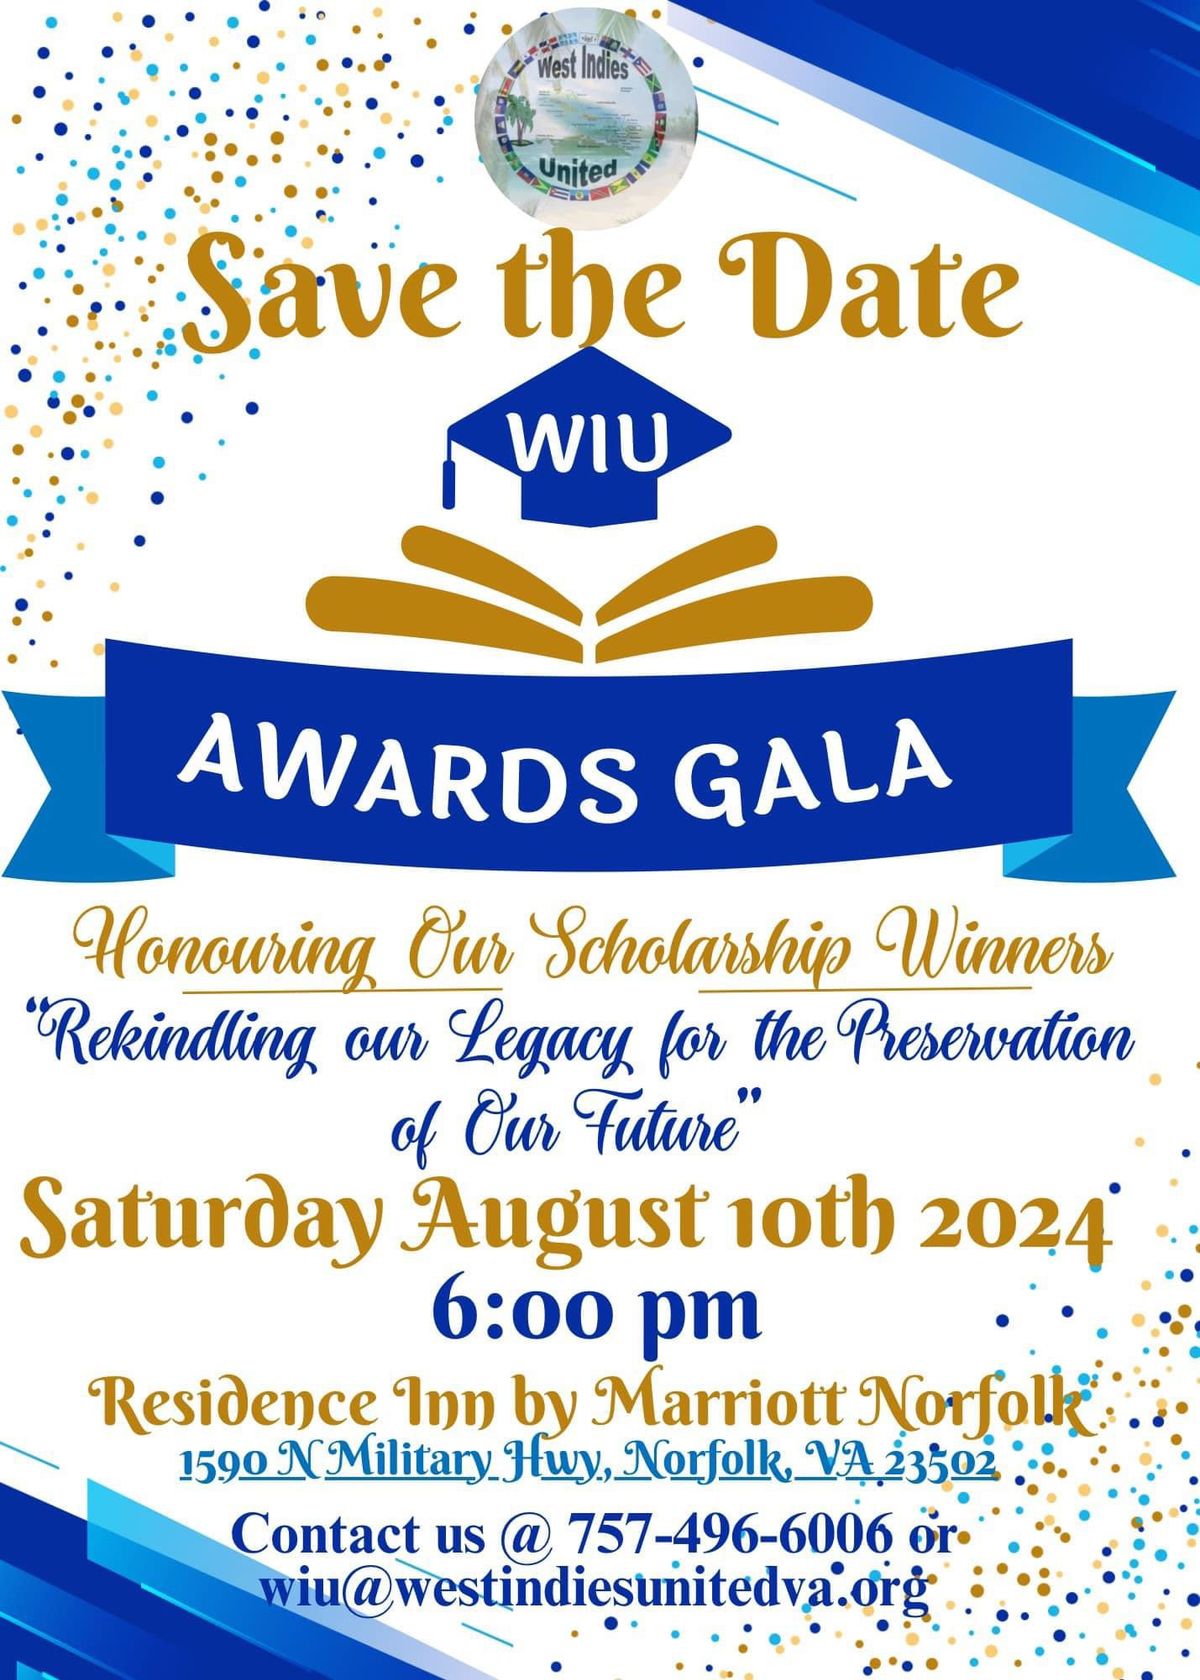 WIU Awards Gala